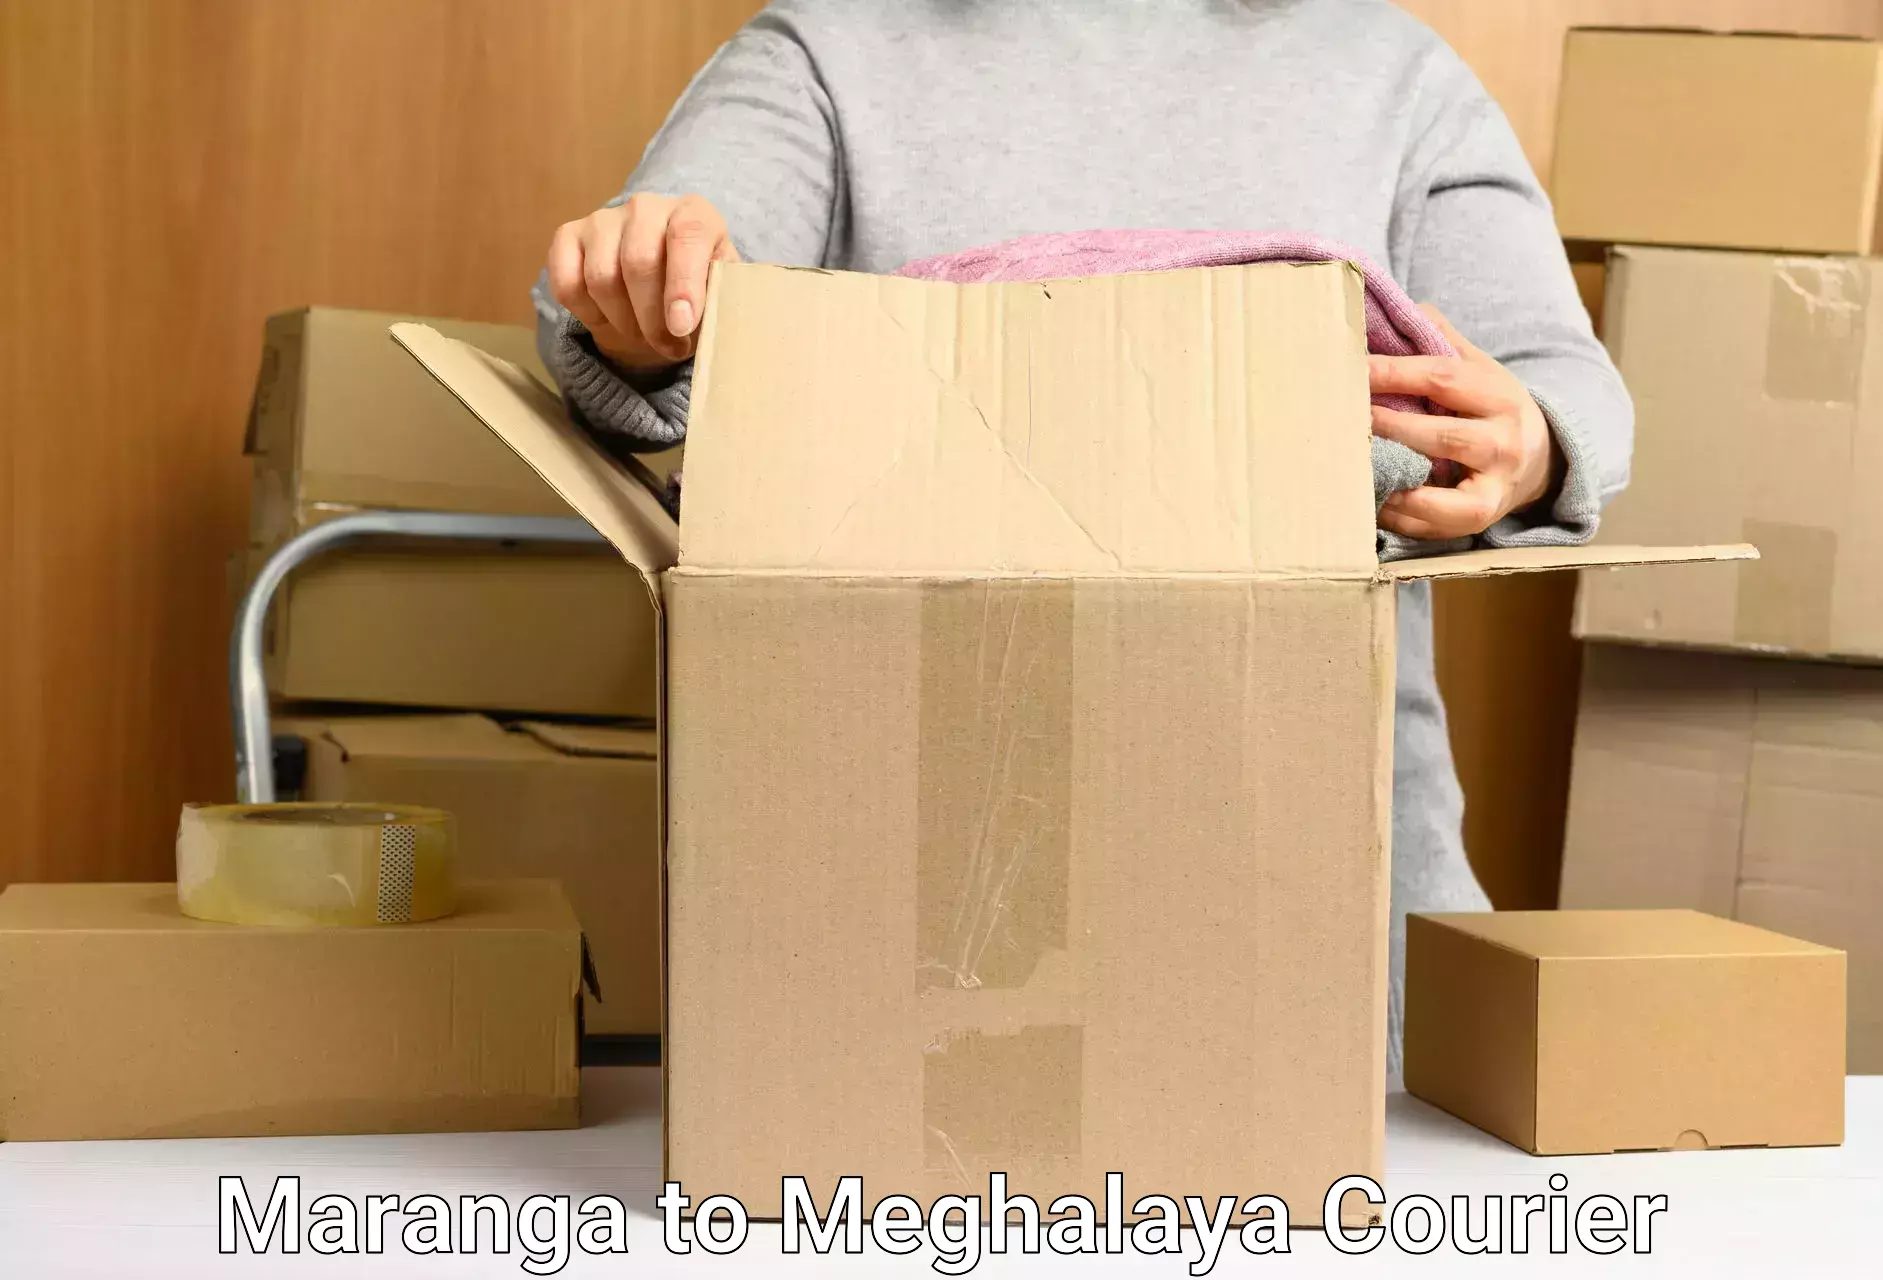 Sustainable delivery practices Maranga to Meghalaya